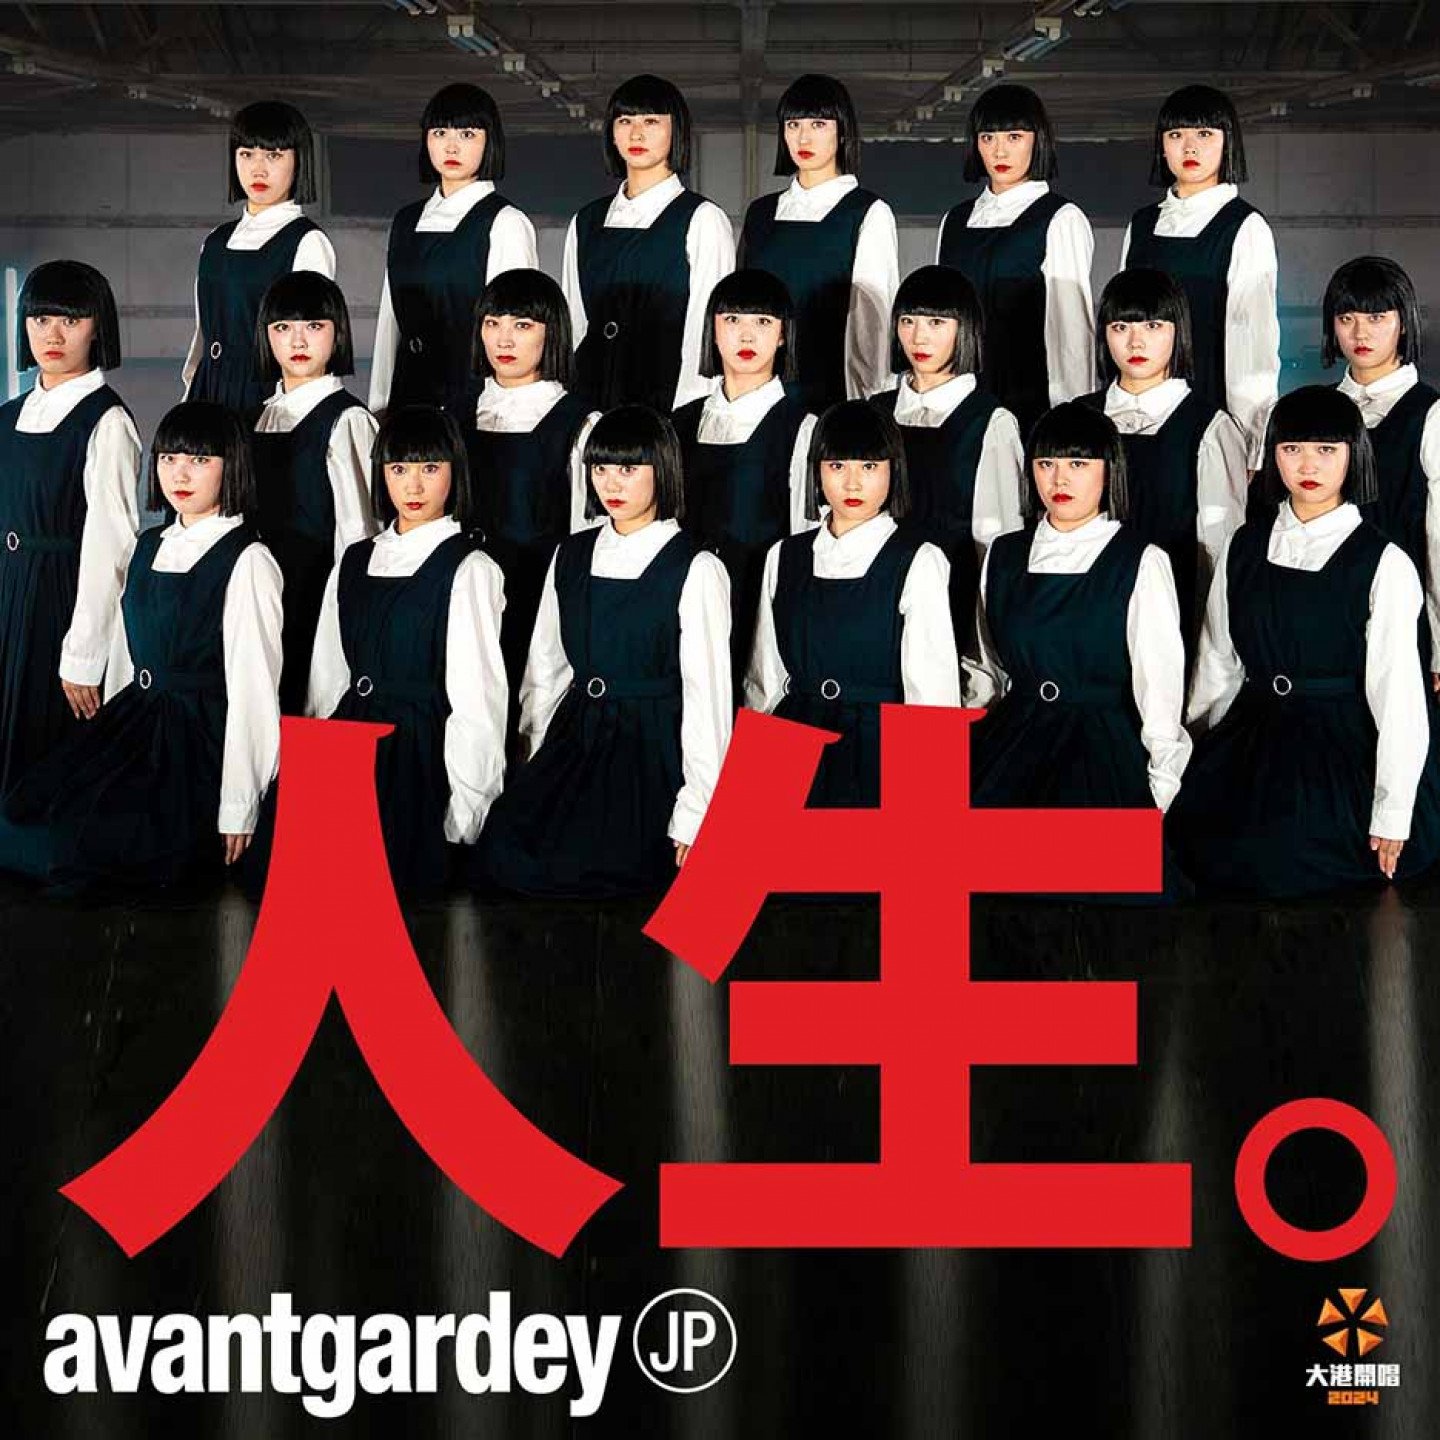 日本舞團avantgardey